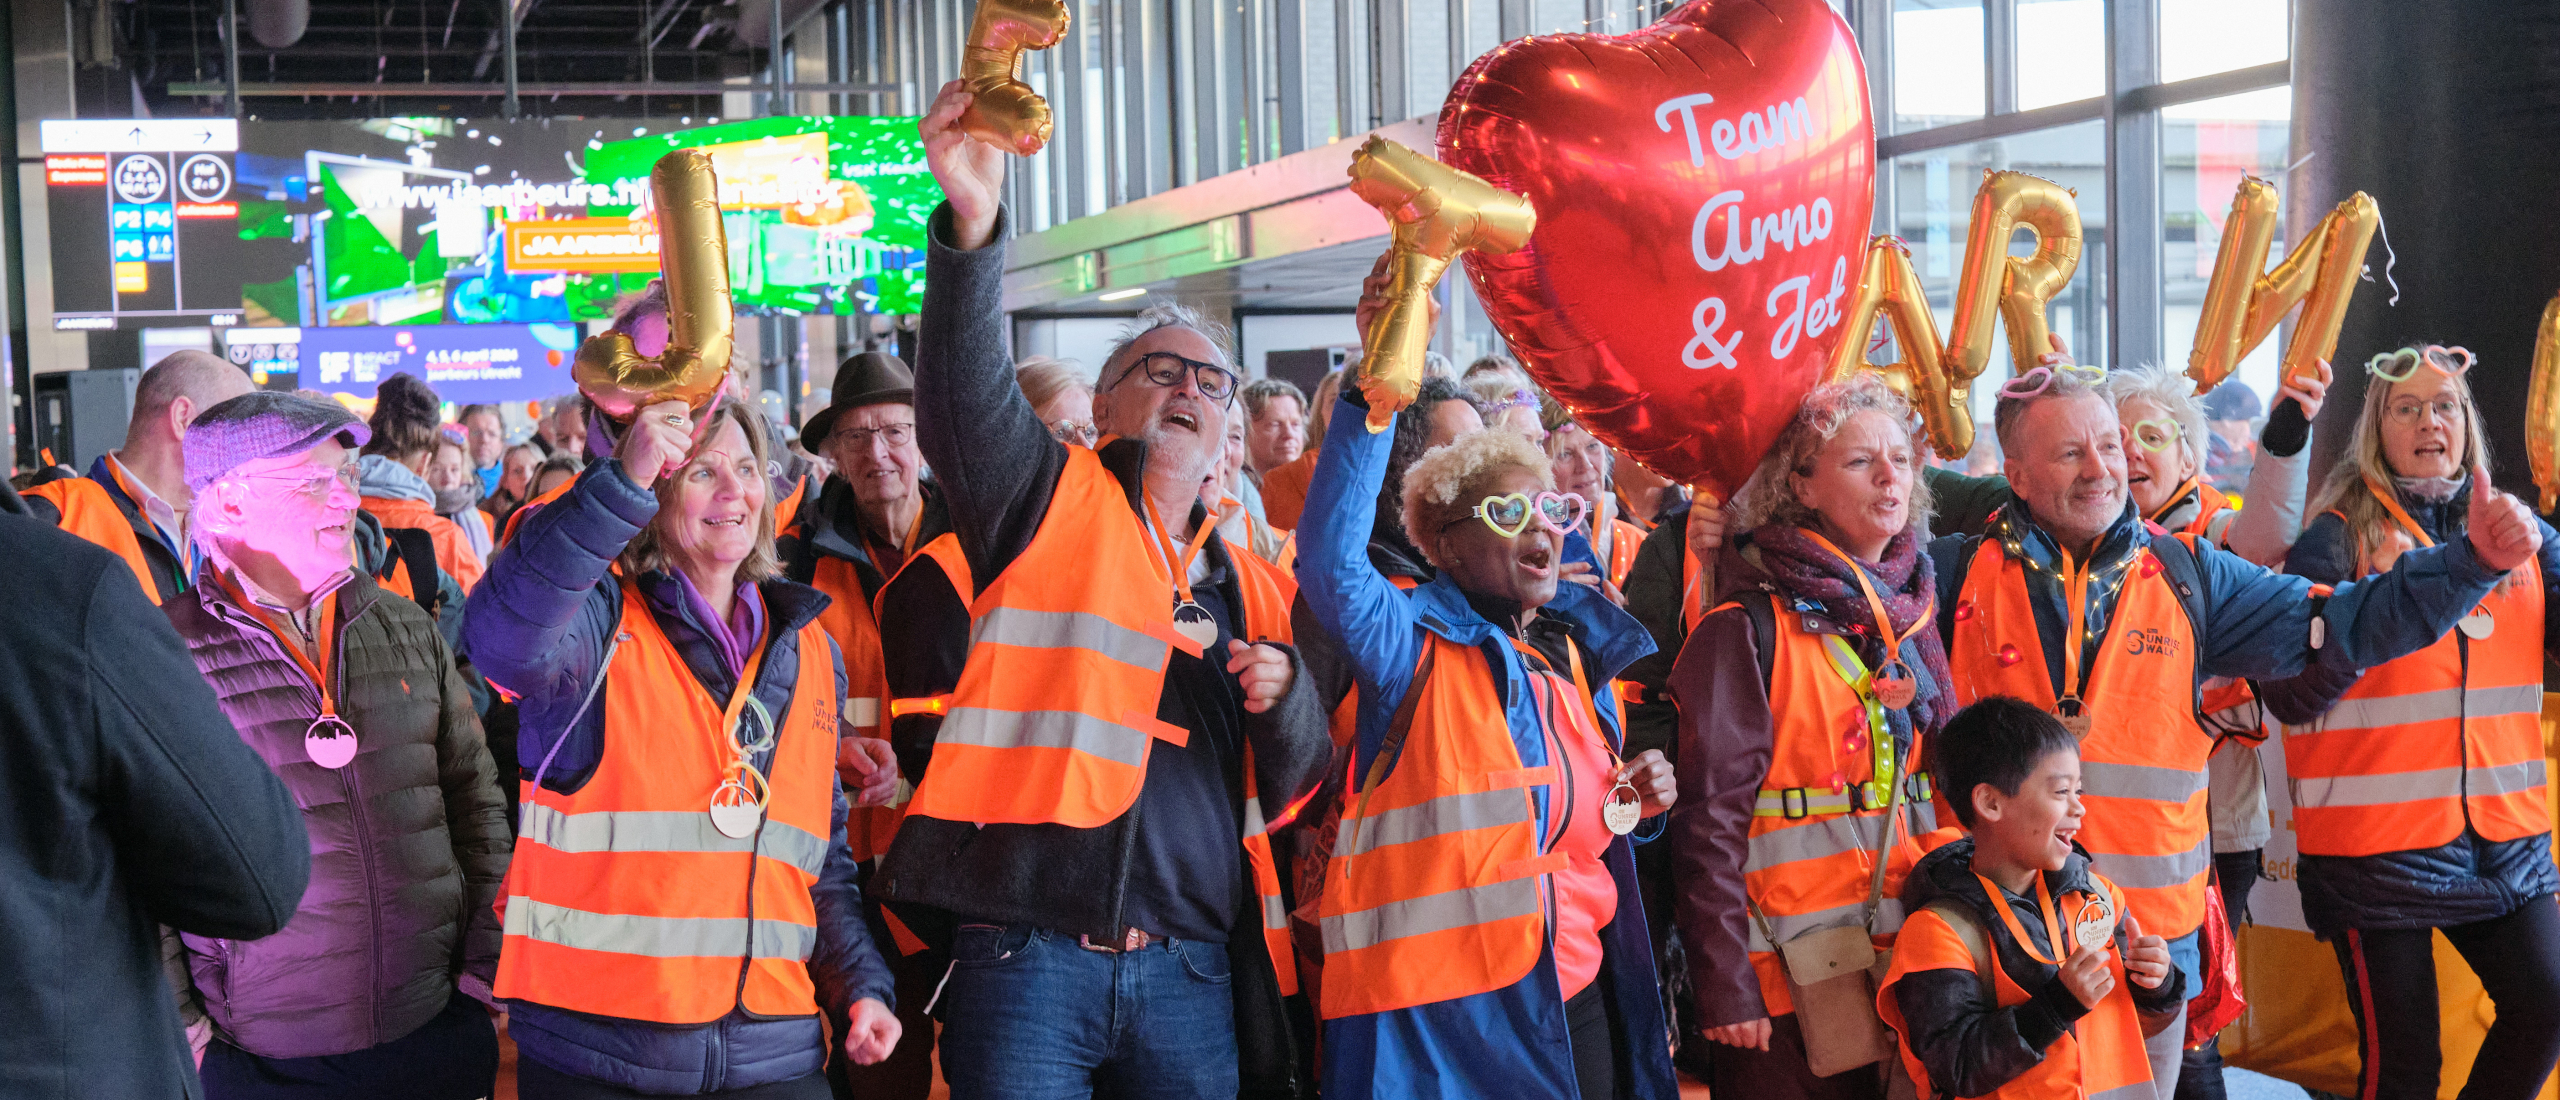 Succesvolle derde editie ALS Sunrise Walk brengt een recordbedrag van ruim 900.000 euro op